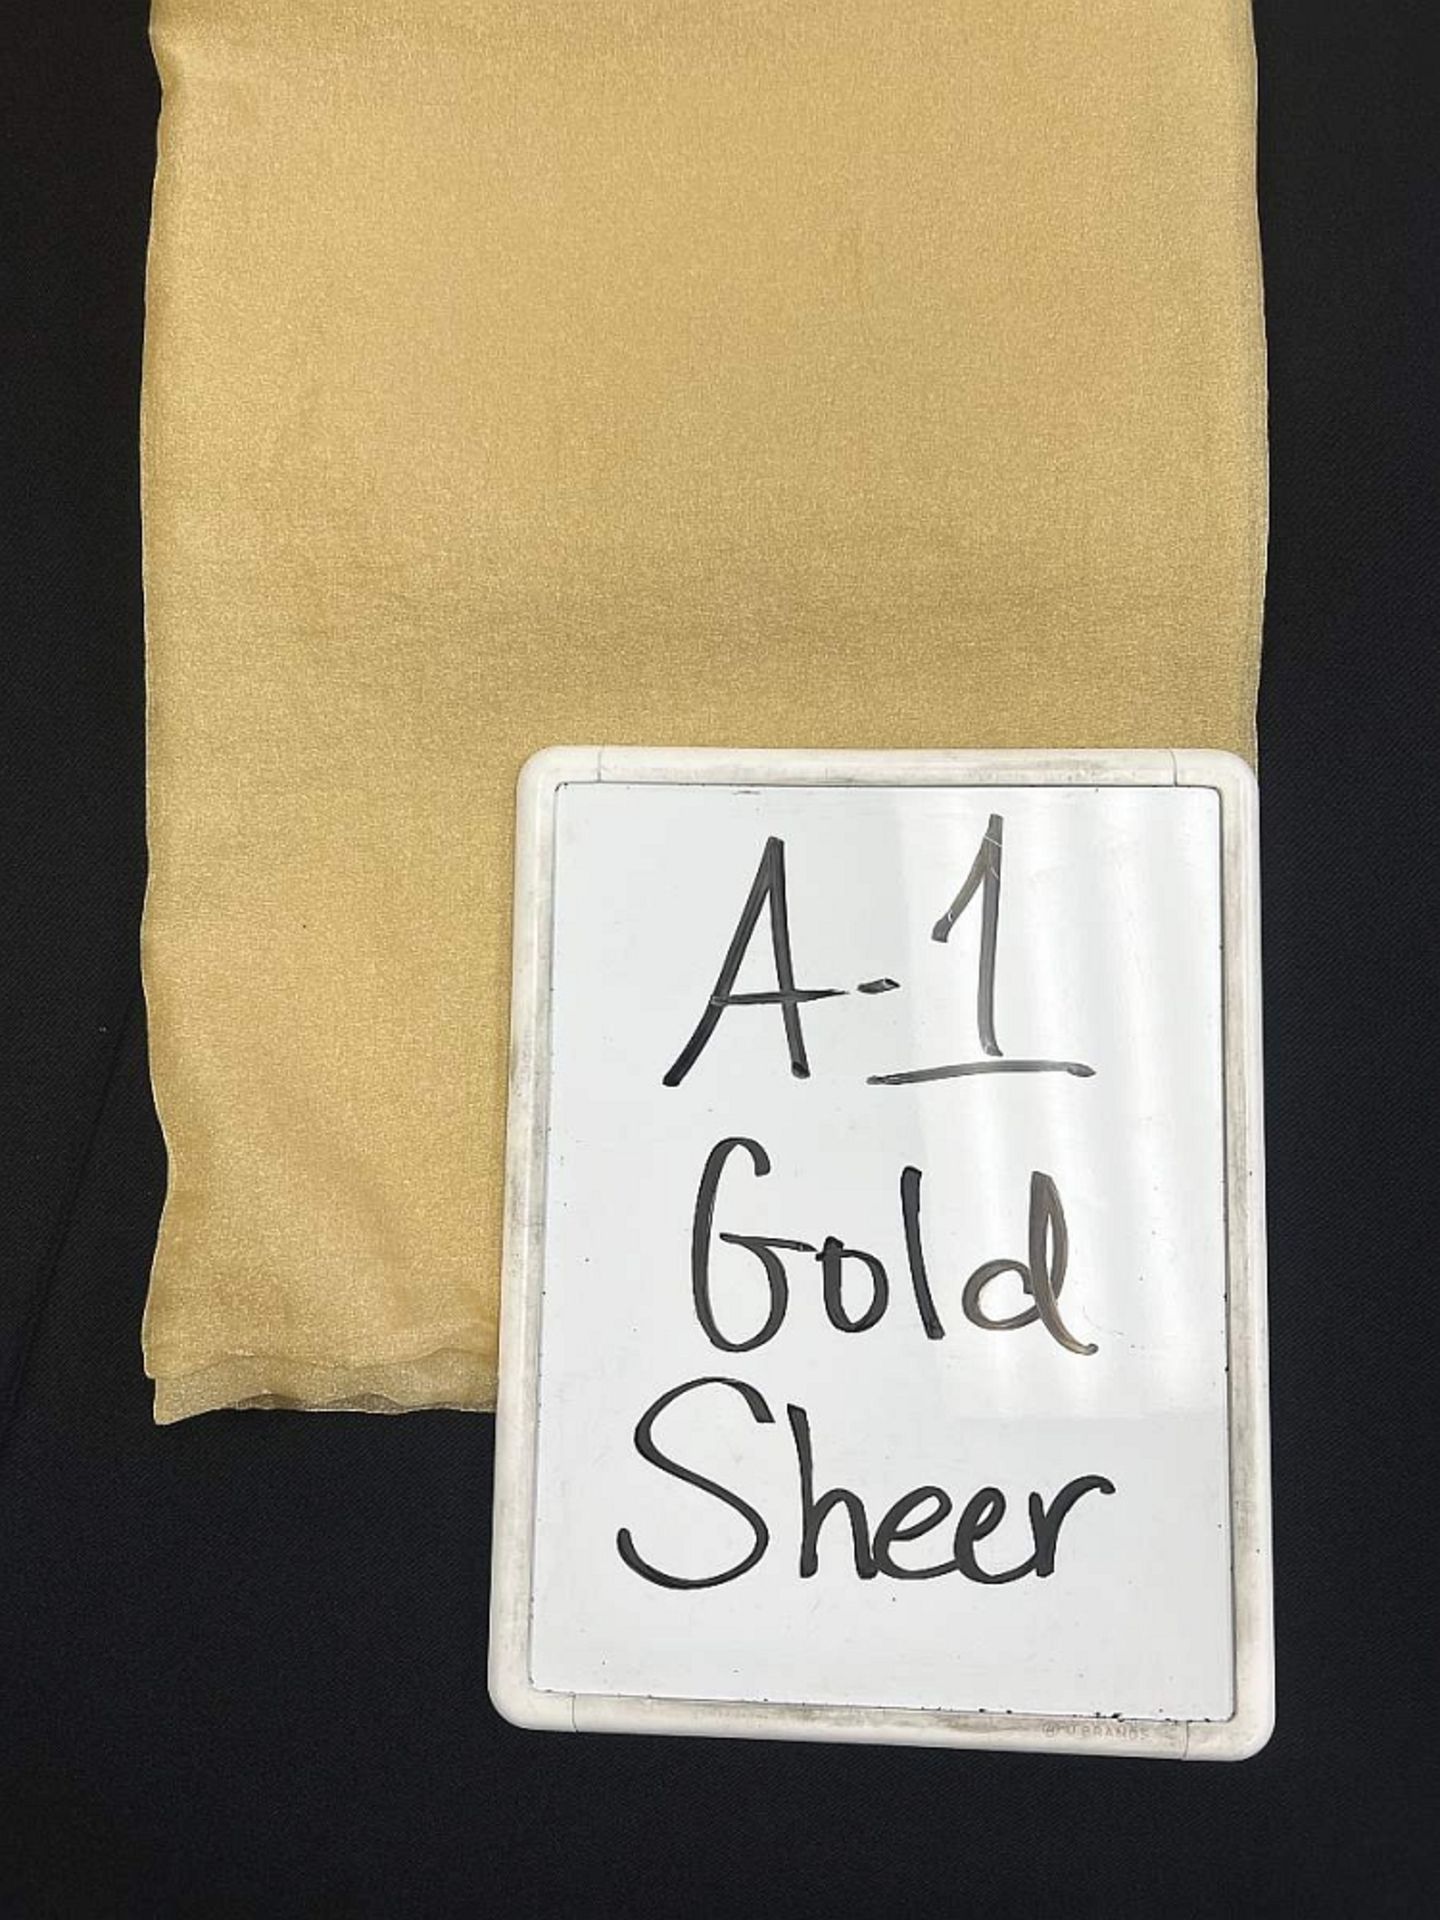 90" x 90" A-1 Gold Shear